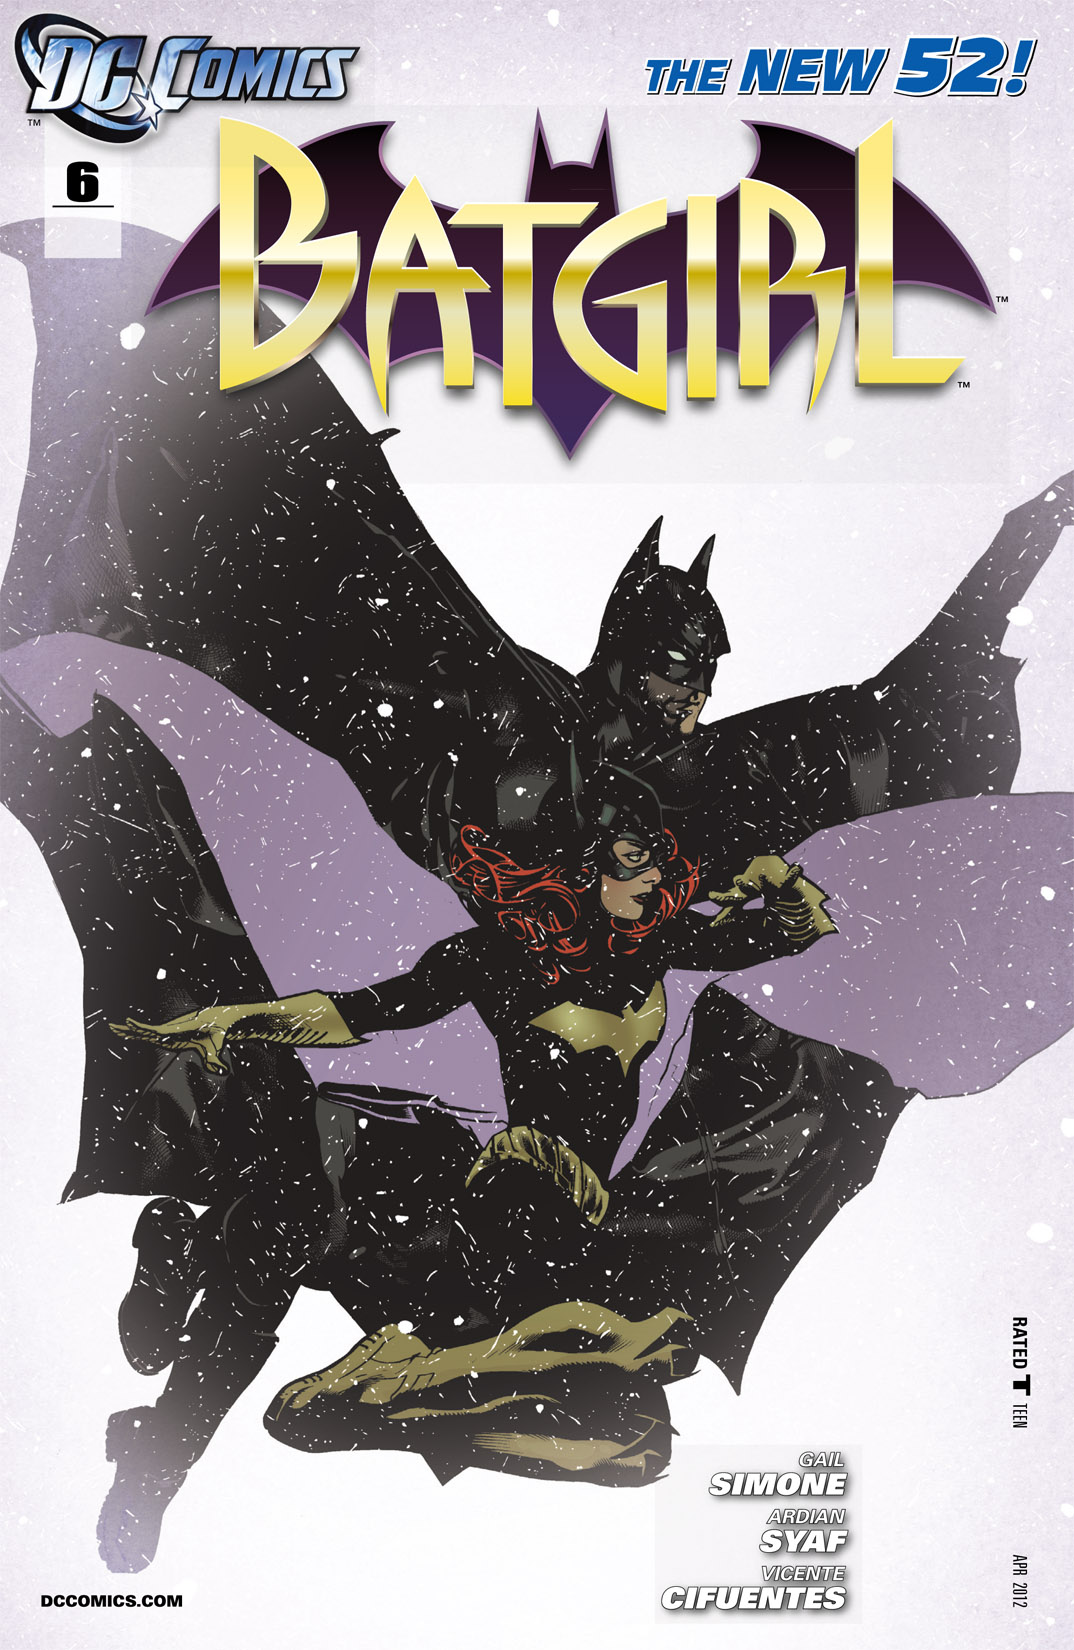 Batgirl Vol. 4 #6